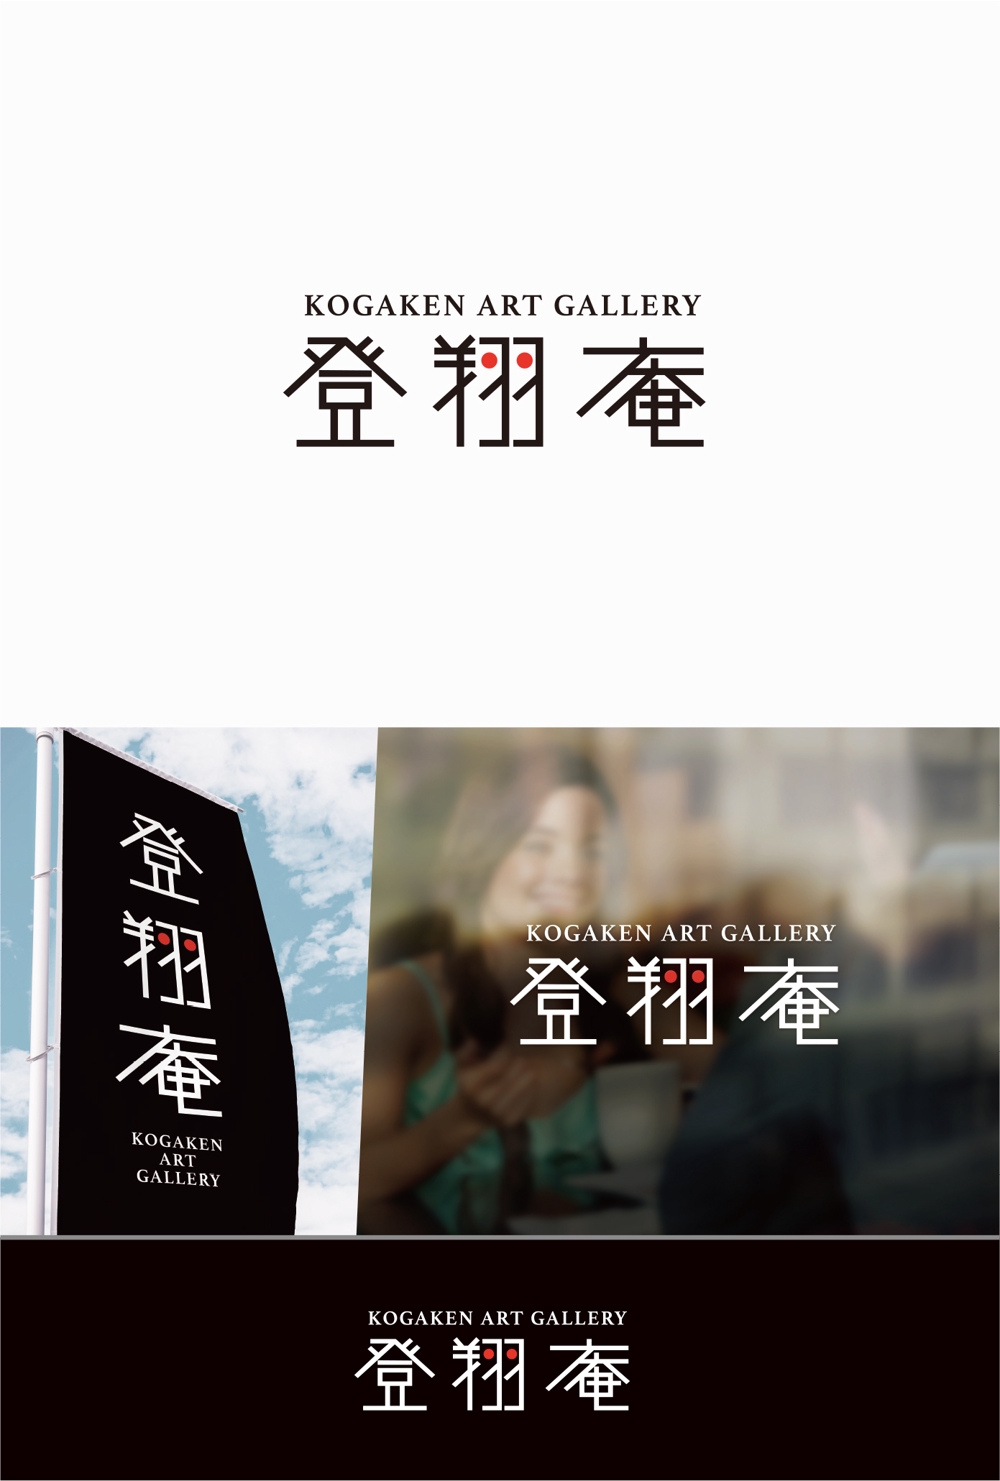 古民家アートギャラリー「KOGAKEN art gallery 登翔庵」のロゴ